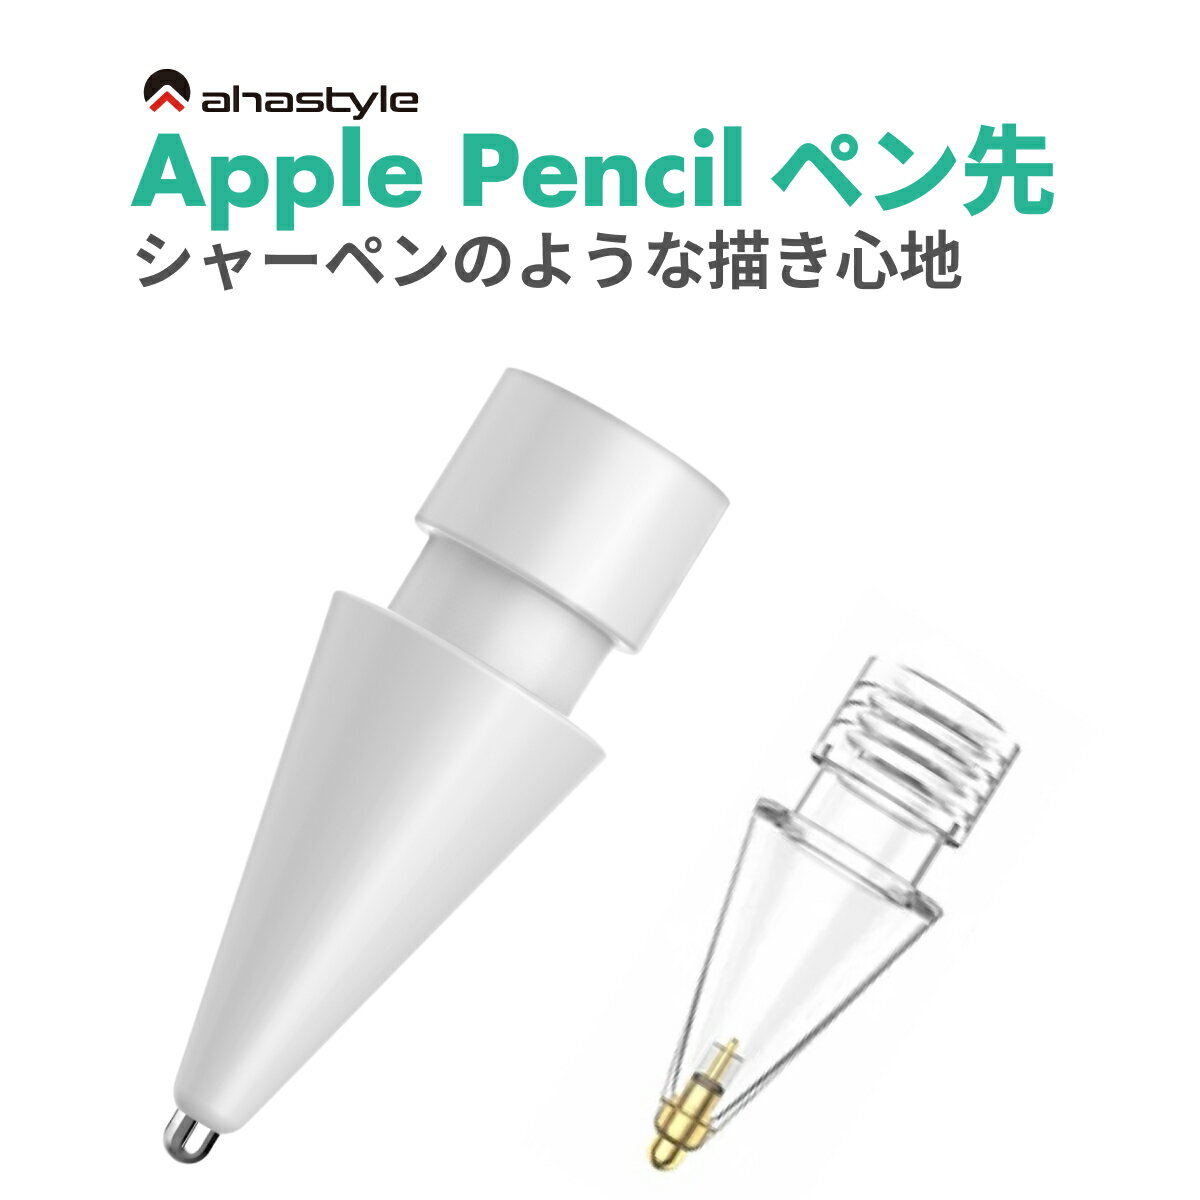 Apple Pencil 極細 ペン先 アップルペン